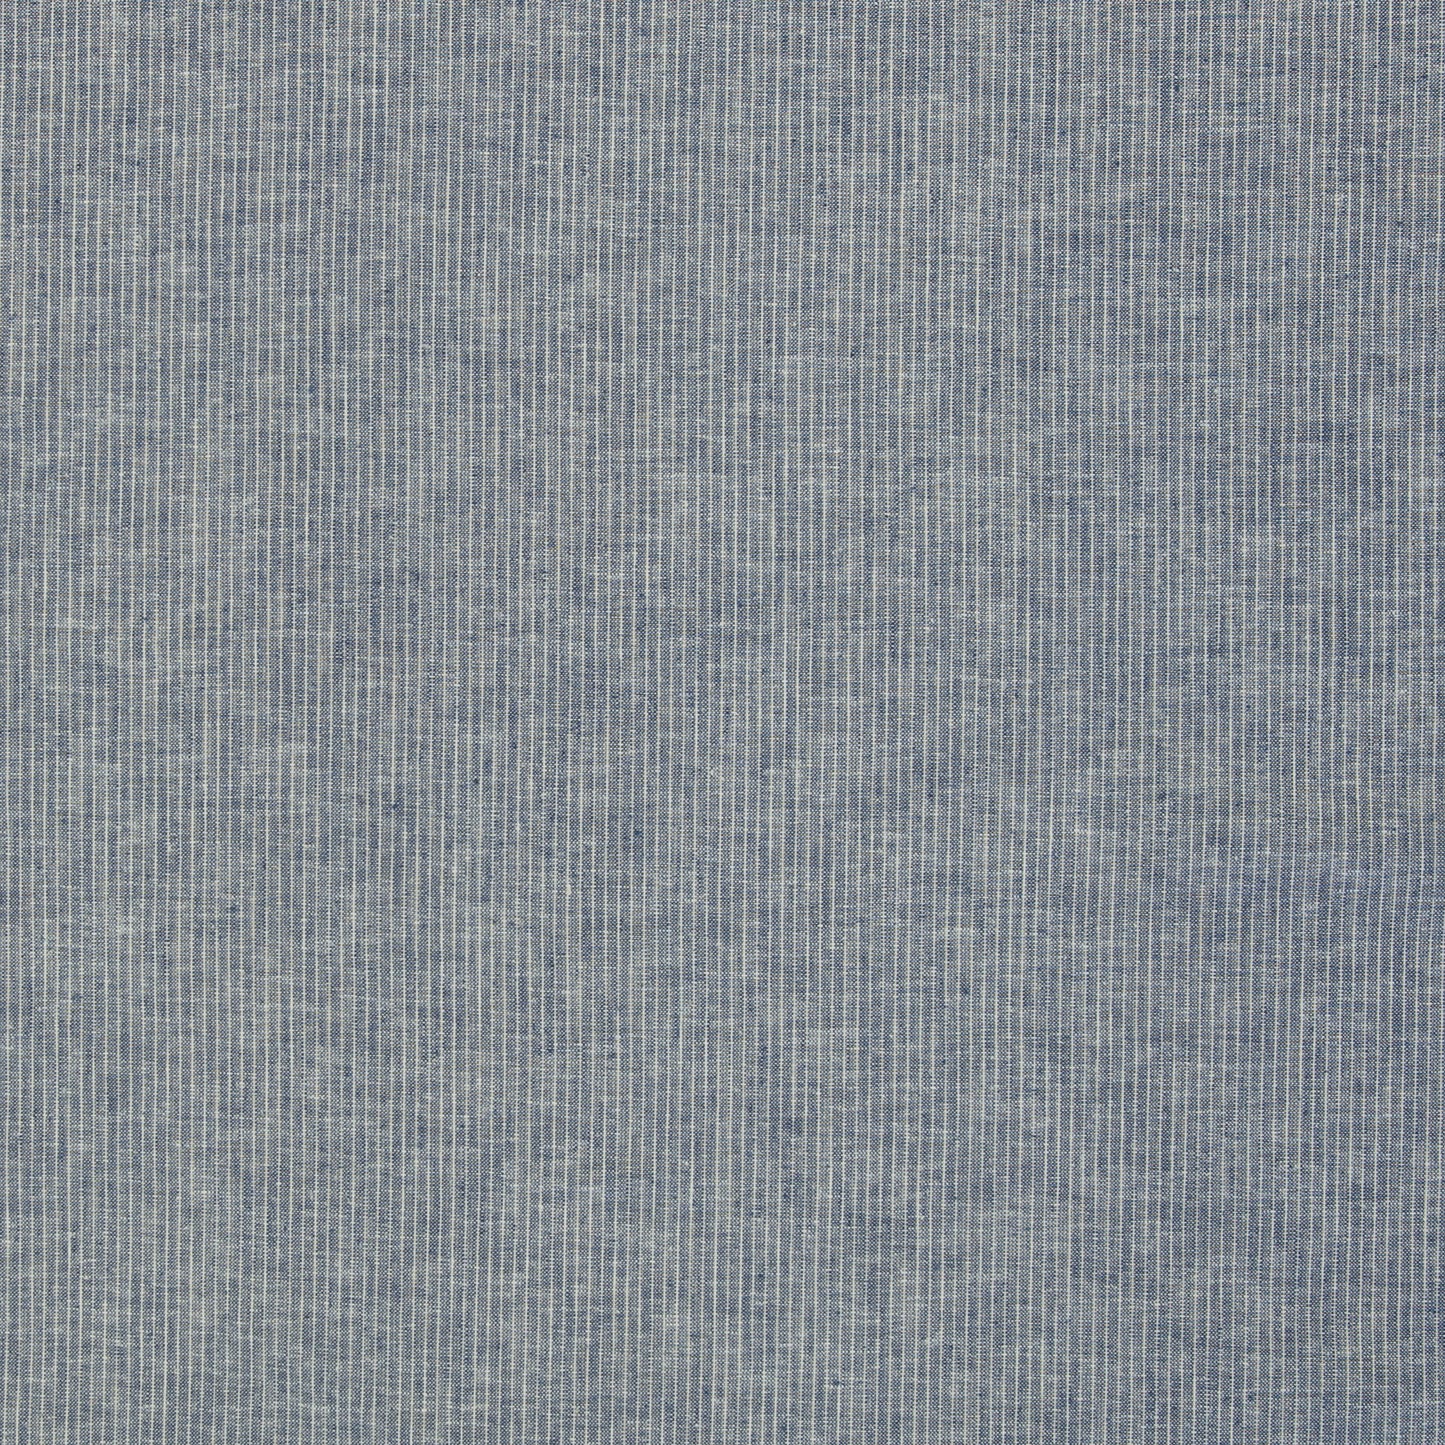 Baumwolle Leinen Webware meliert Streifen jeansblau